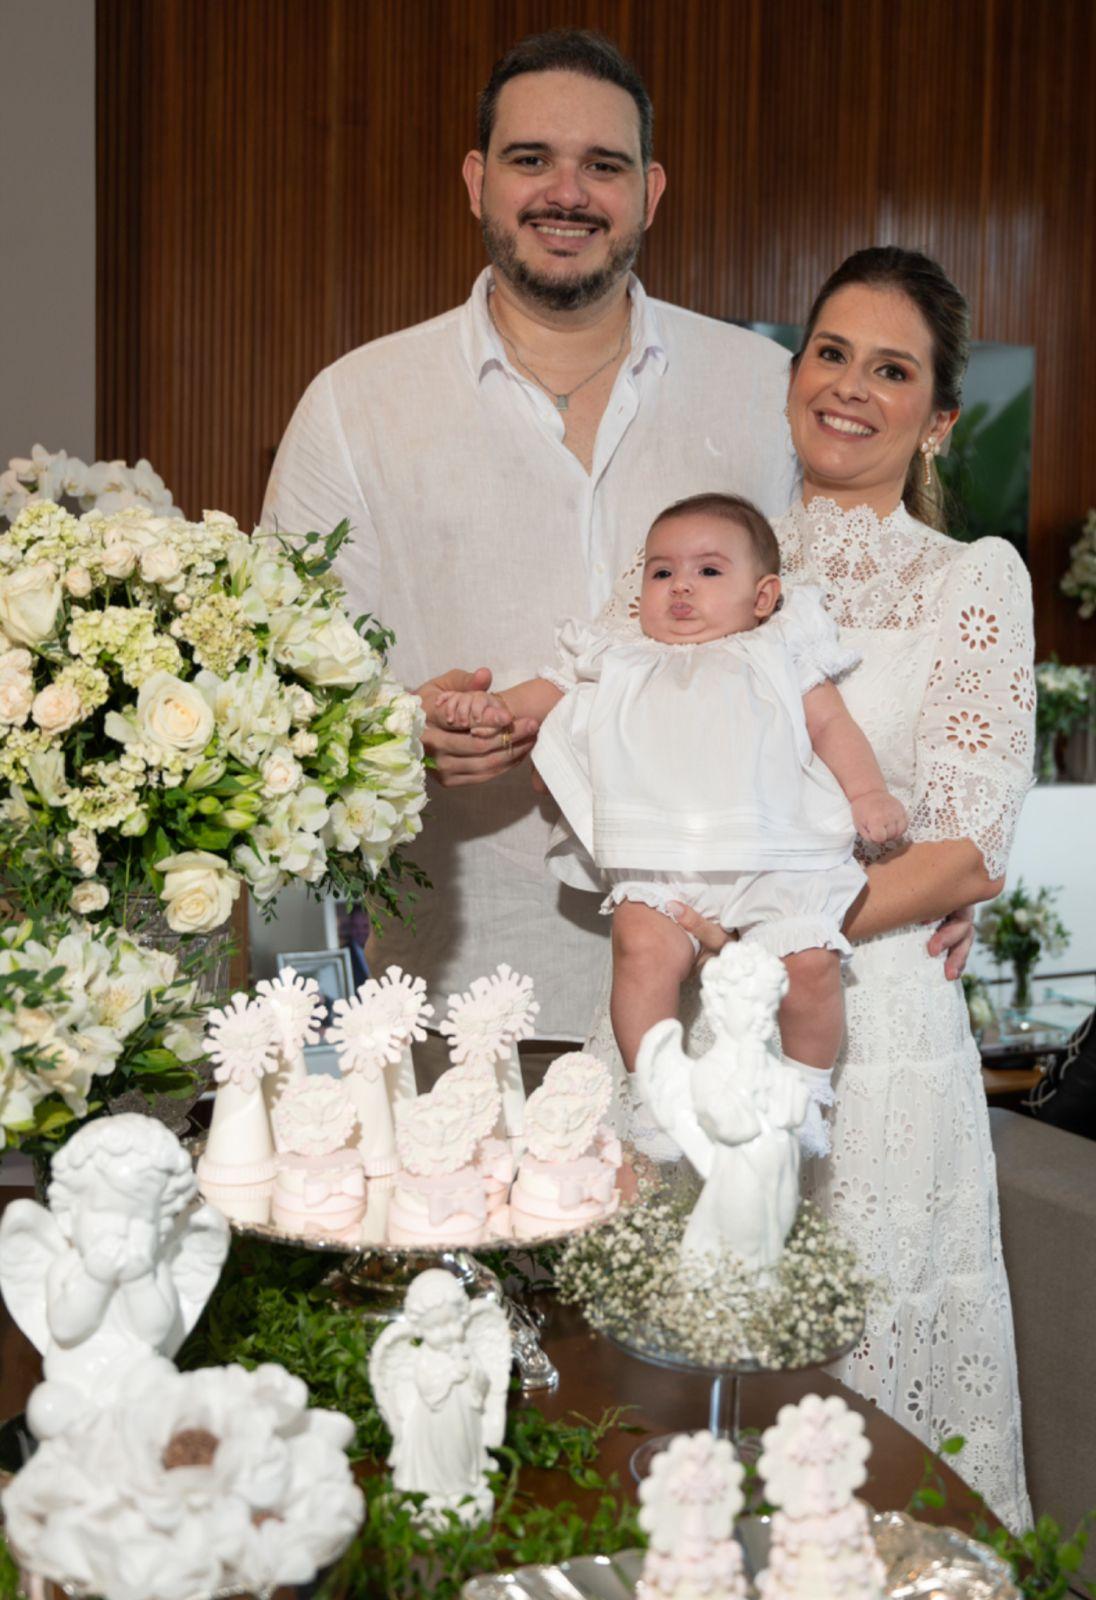 João Salles Neto e Marina Derenusson batizaram a pequena Luiza (Foto/Sélem Fotografia)